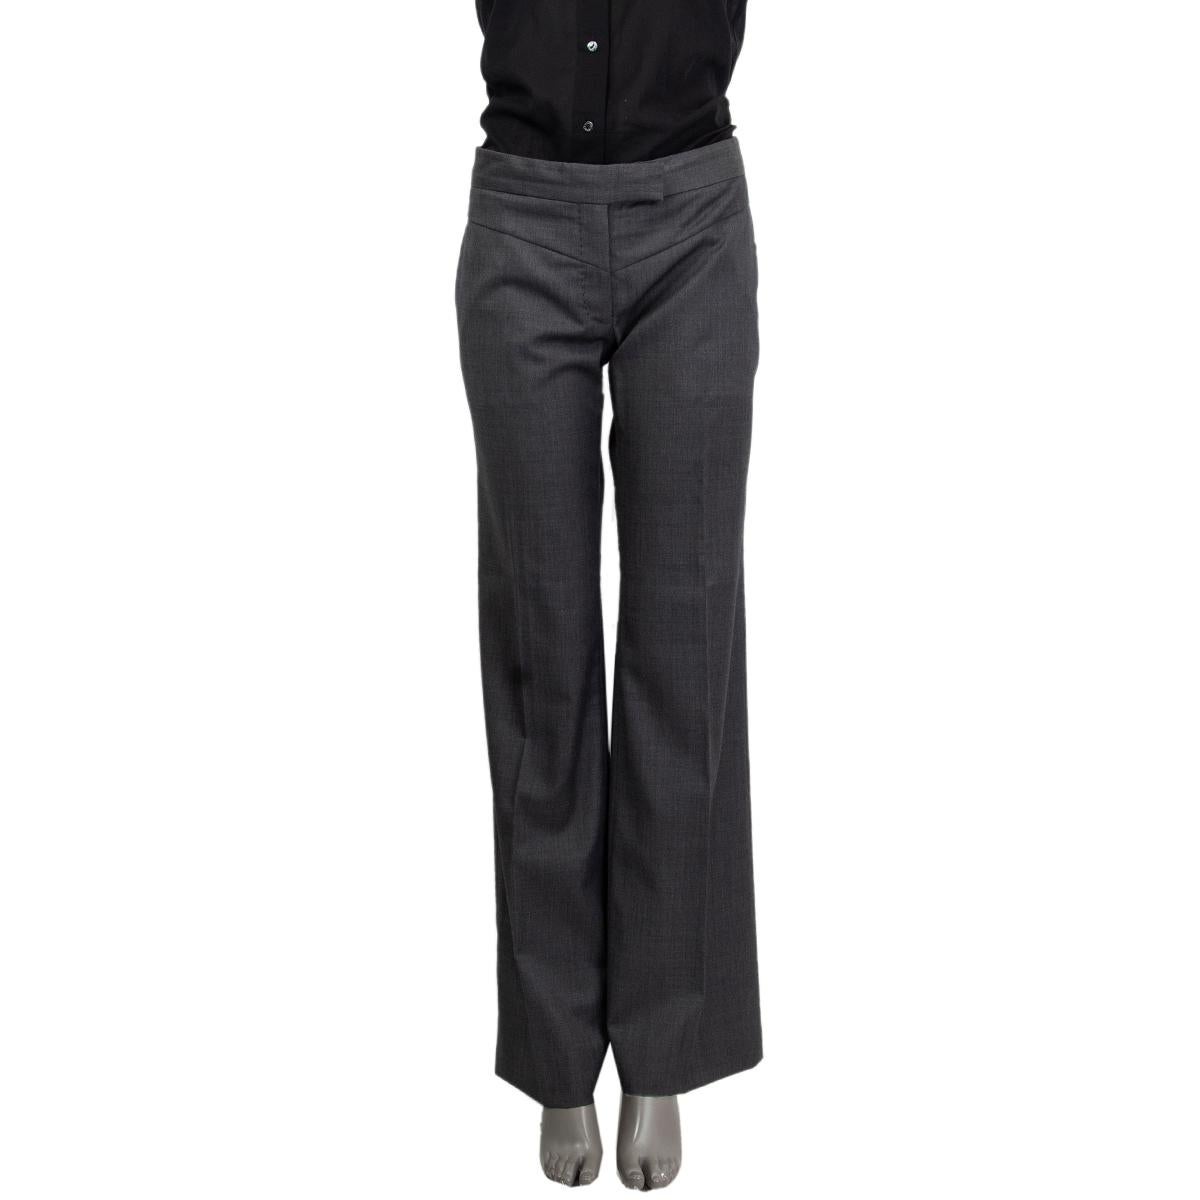 100% authentische Stella McCartney Anzughose aus grauer Wolle (100%) mit Taschen. Auf der Vorderseite mit einem Reißverschluss und Hakenverschluss zu schließen. Sie wurden getragen und sind in ausgezeichnetem Zustand. 

Siehe separates Angebot für